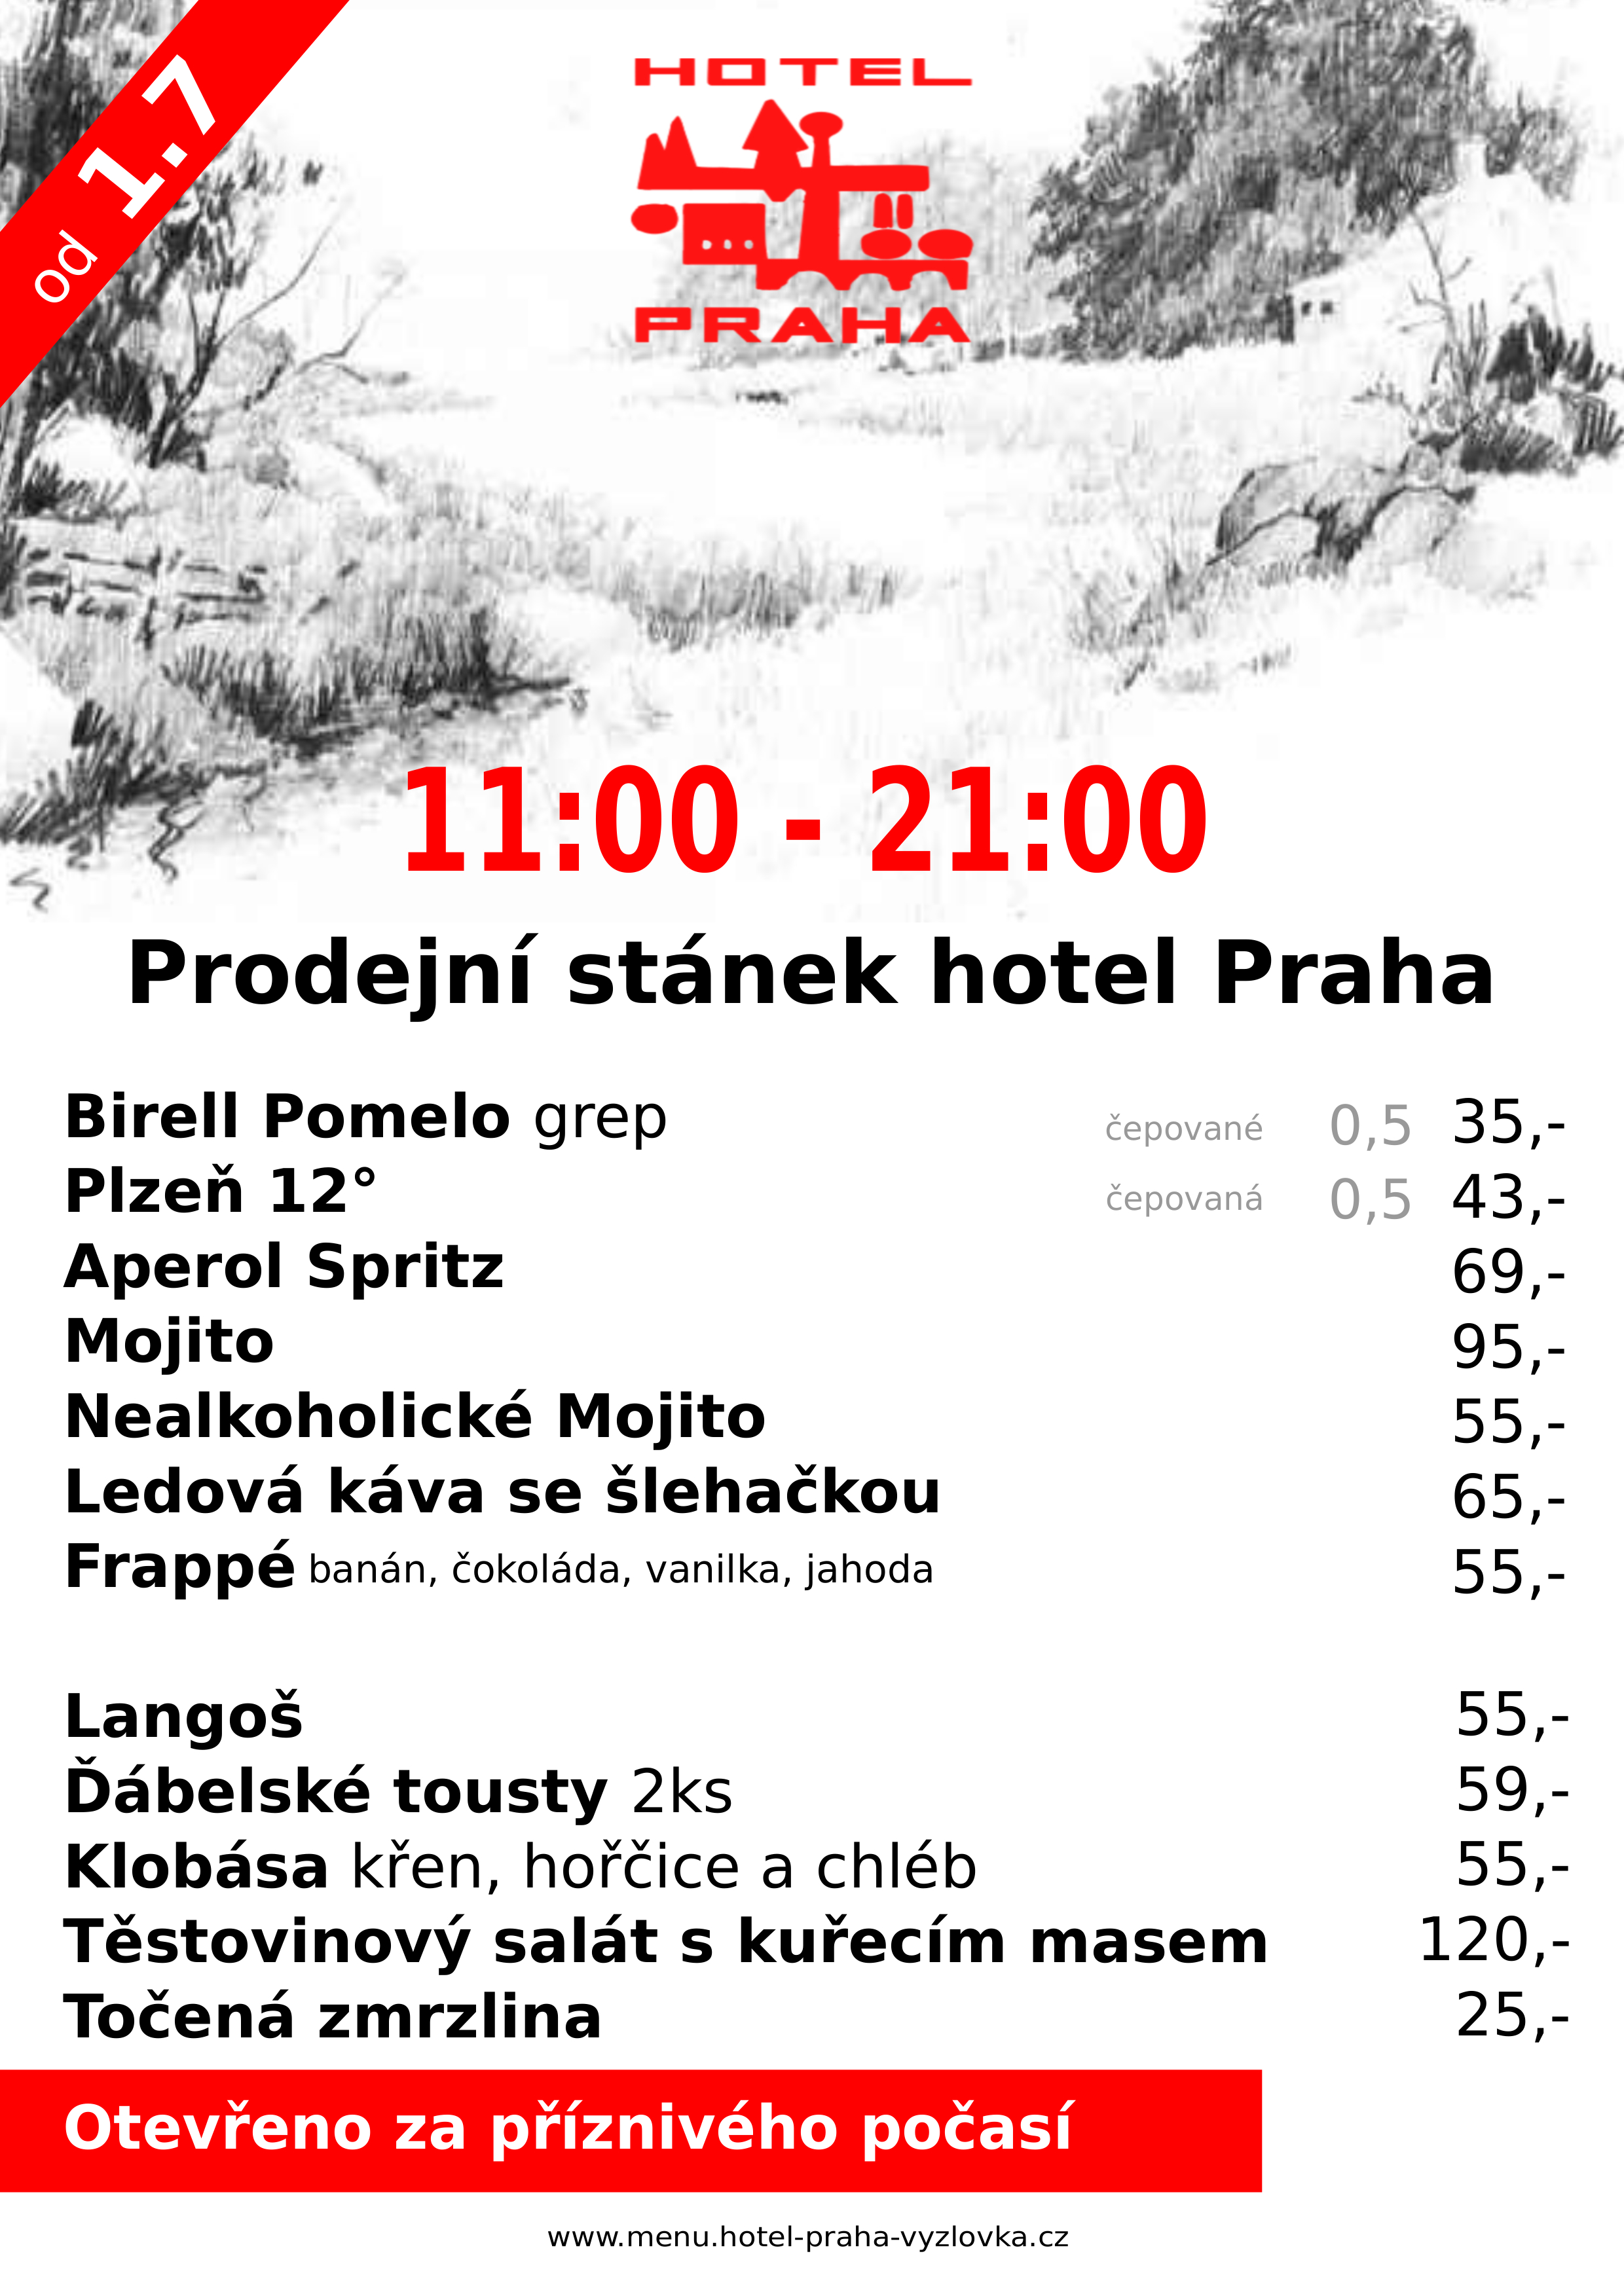 Rozvoz jídla Vyžlovka, prodejní stánek hotel restaurace Praha Vyžlovka rozvoz jídel - Hotel restaurace Praha Pronájem